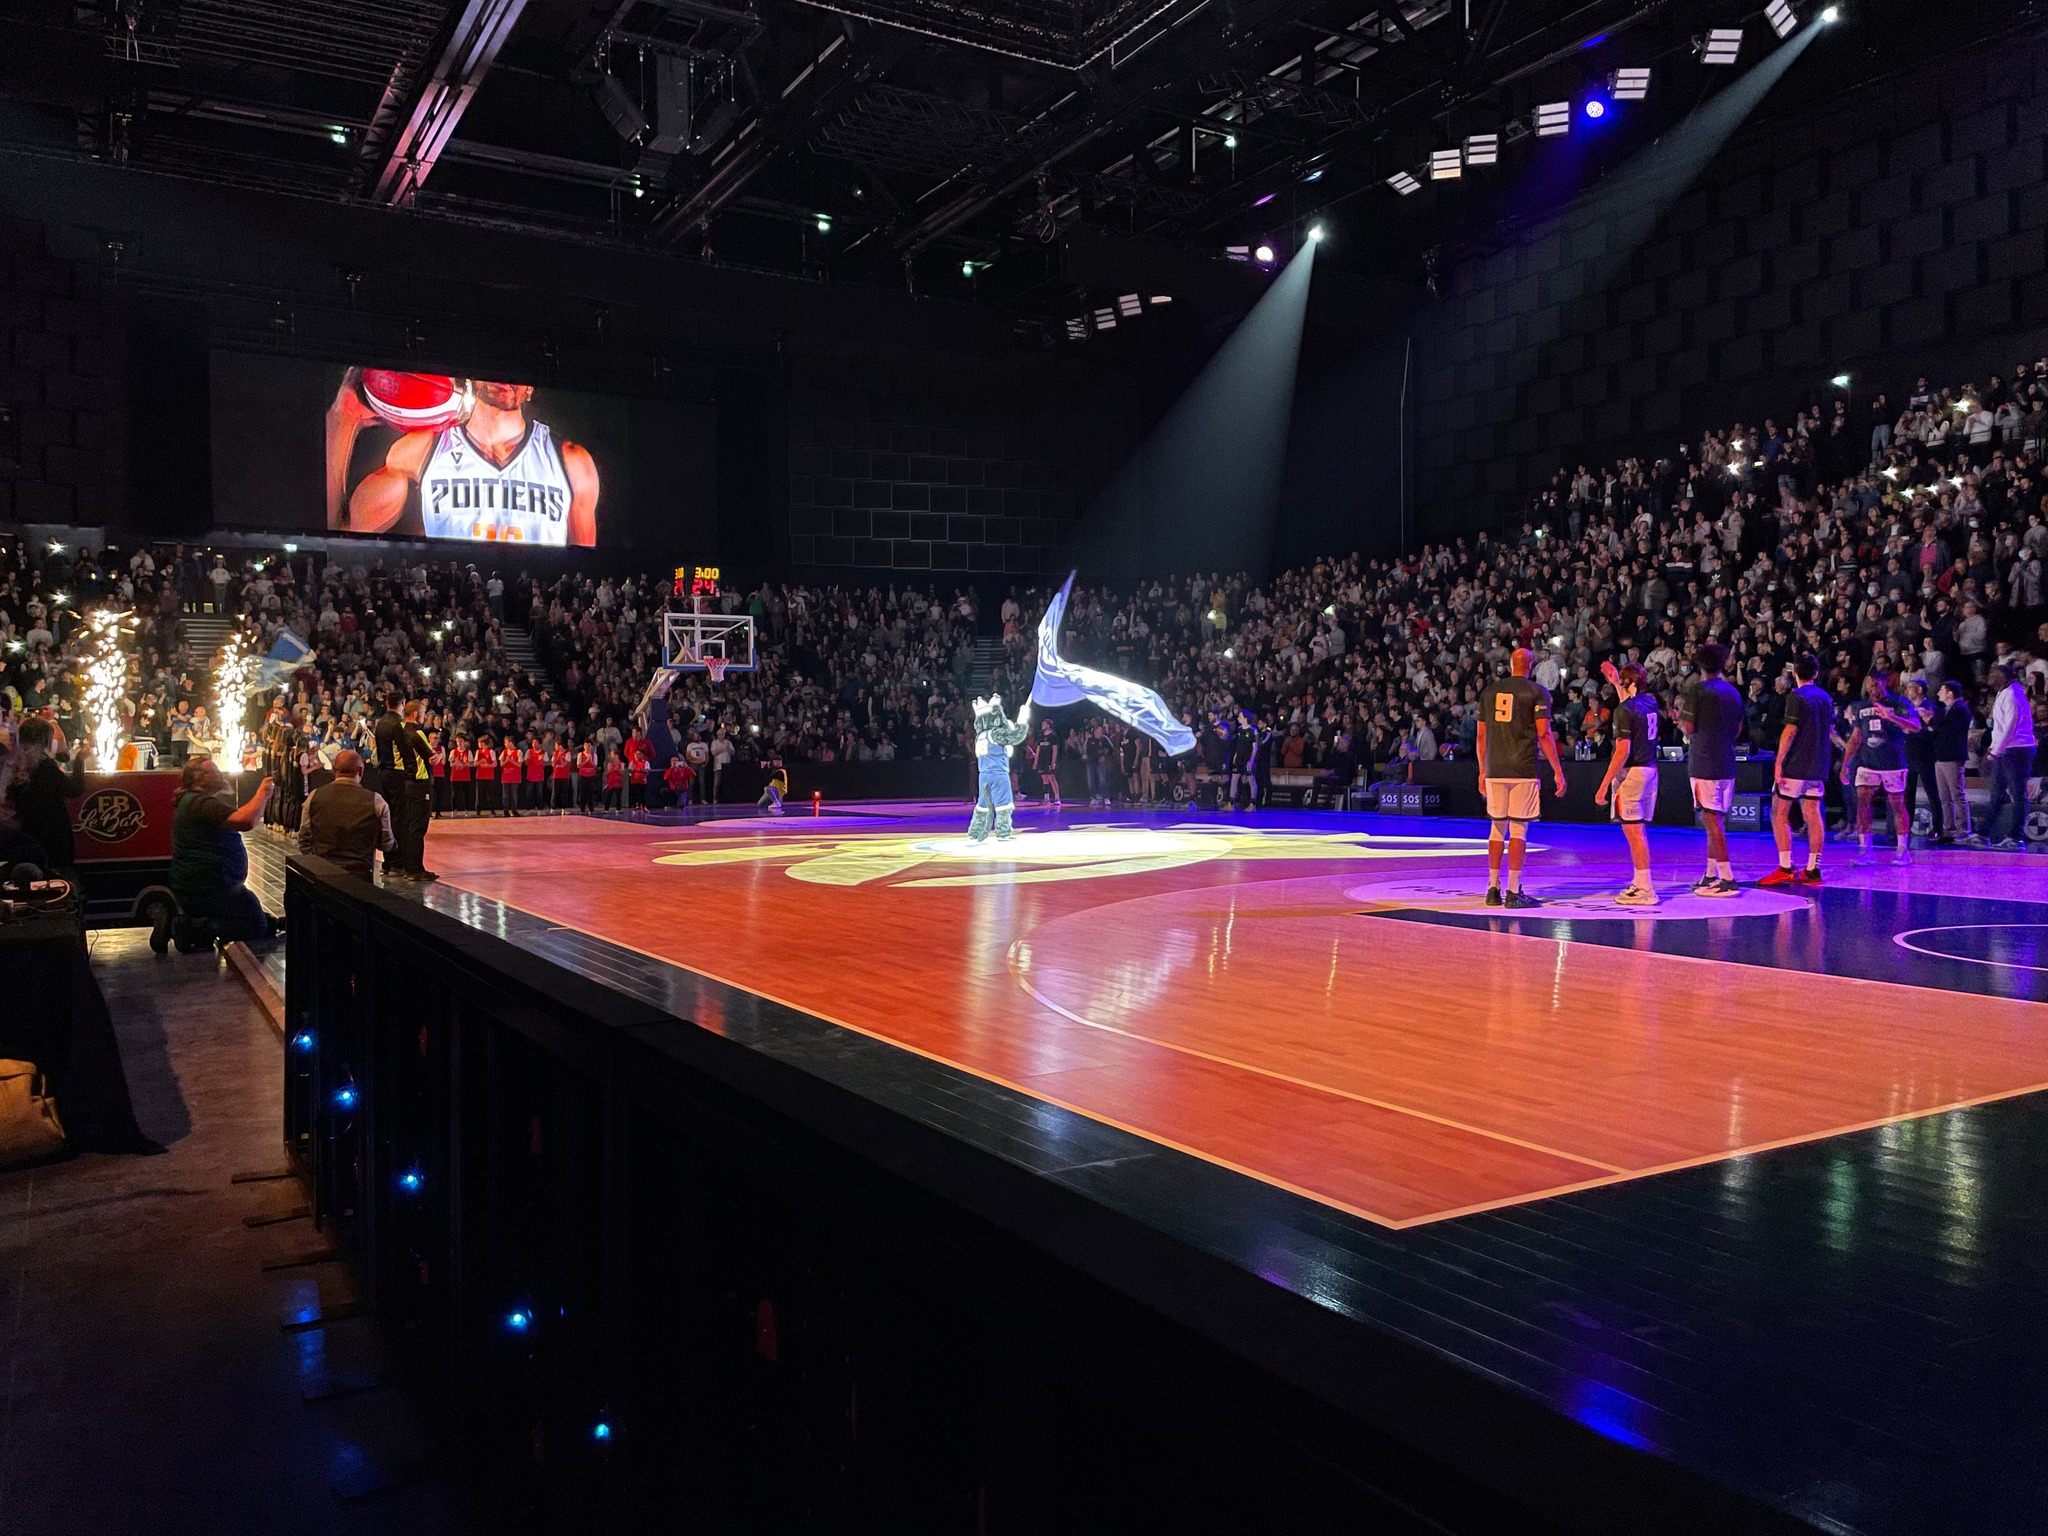 Premier match du Poitiers Basket 86 à l'Aréna du Futuroscope le mardi 12 avril face au LyonSO en championnat NM1